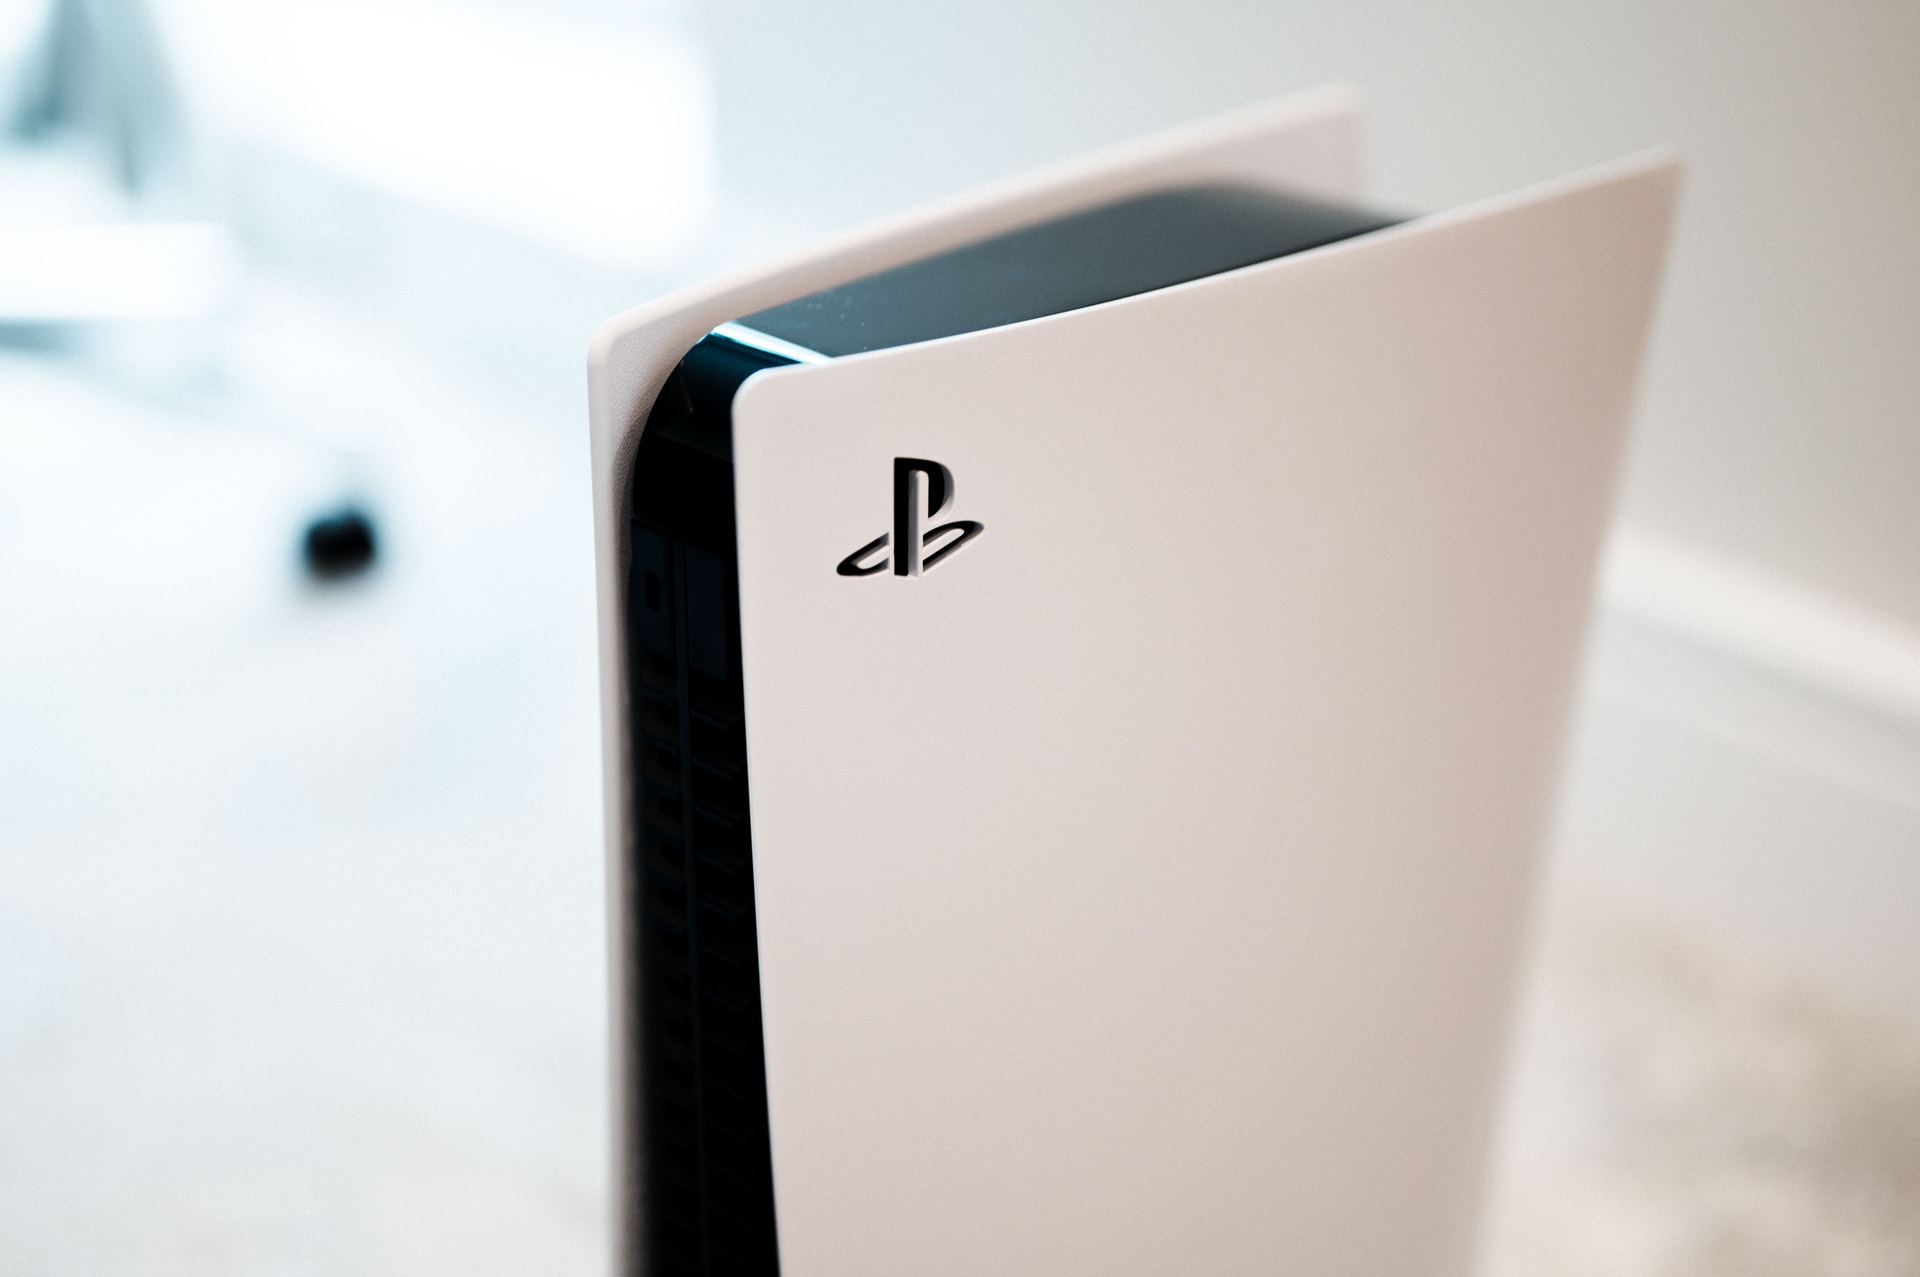 Sony plant, die Spieledienste PlayStation Plus und PlayStation Now in einem einzigen Abonnement zu kombinieren